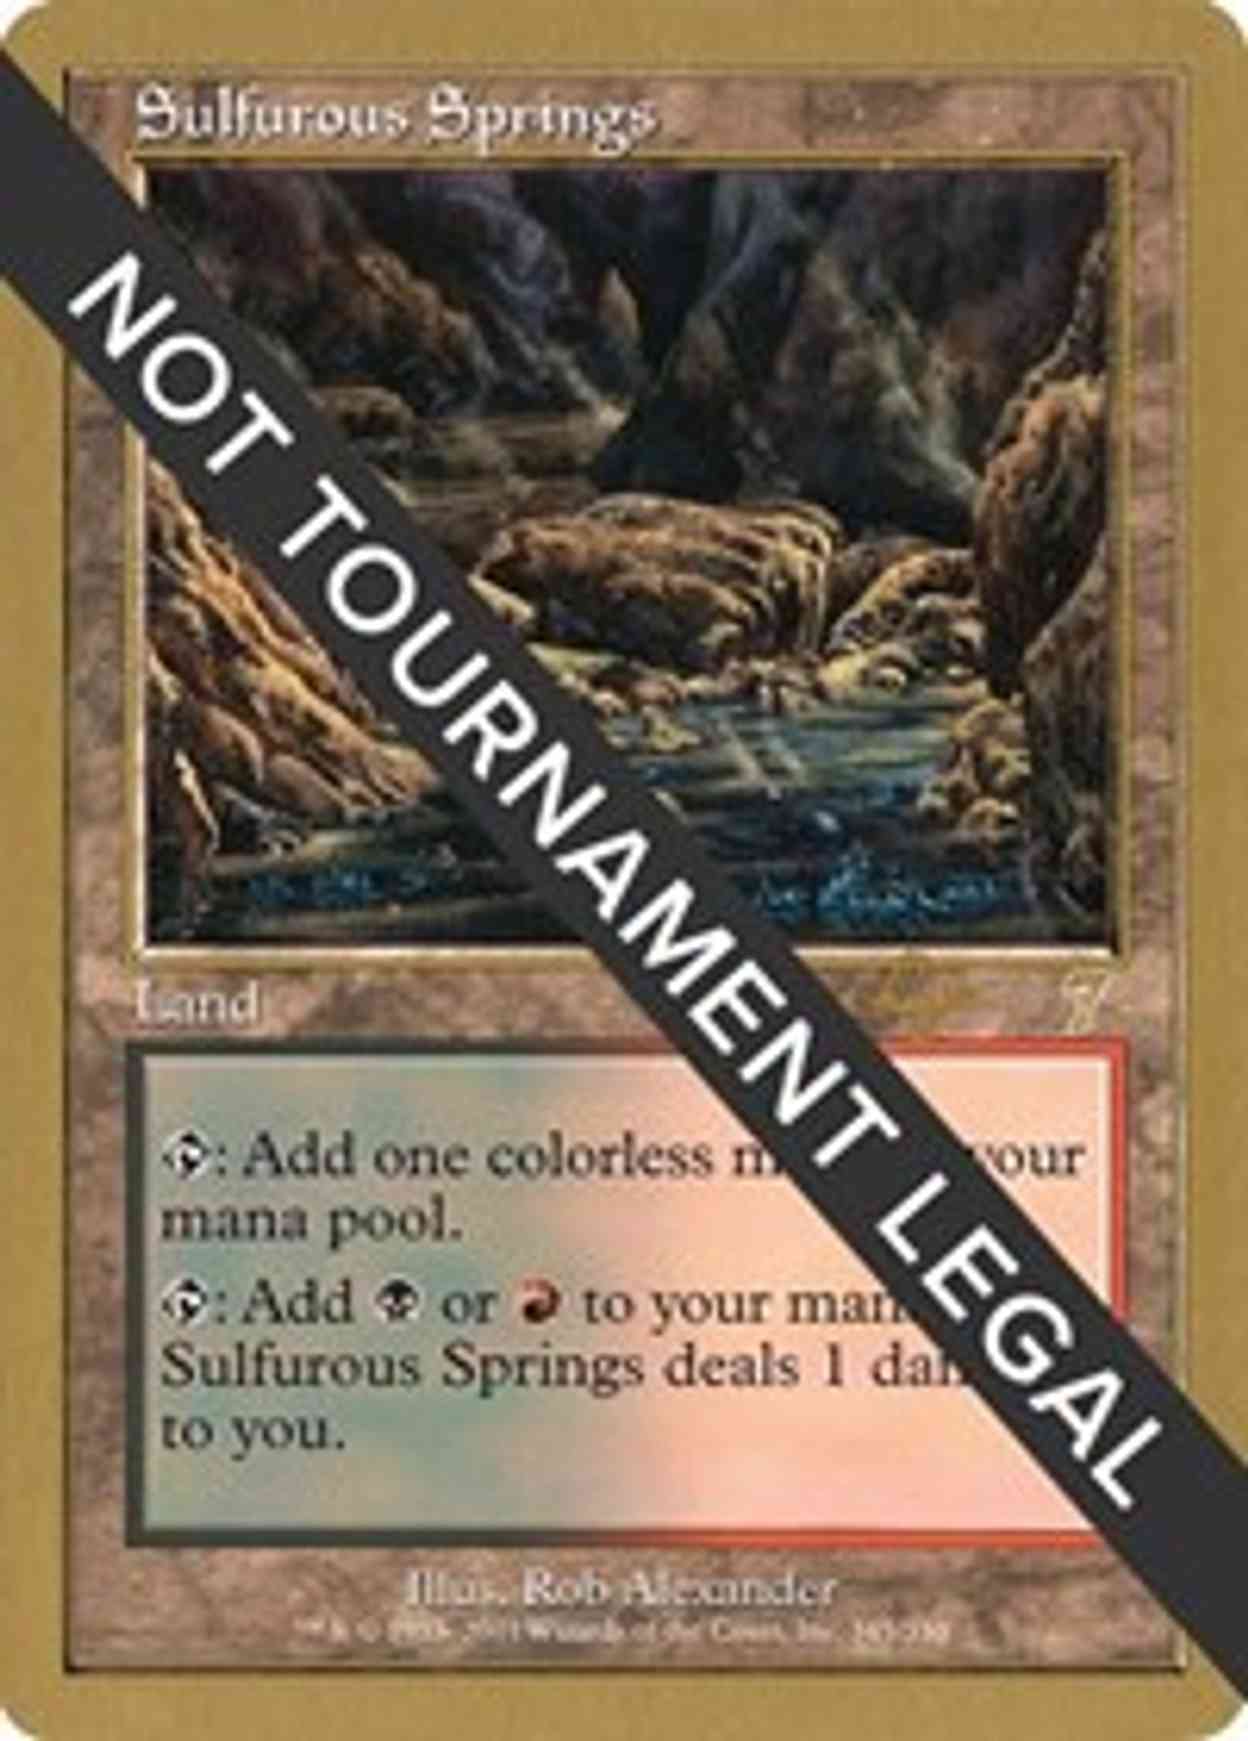 Sulfurous Springs - 2001 Tom van de Logt (7ED) magic card front